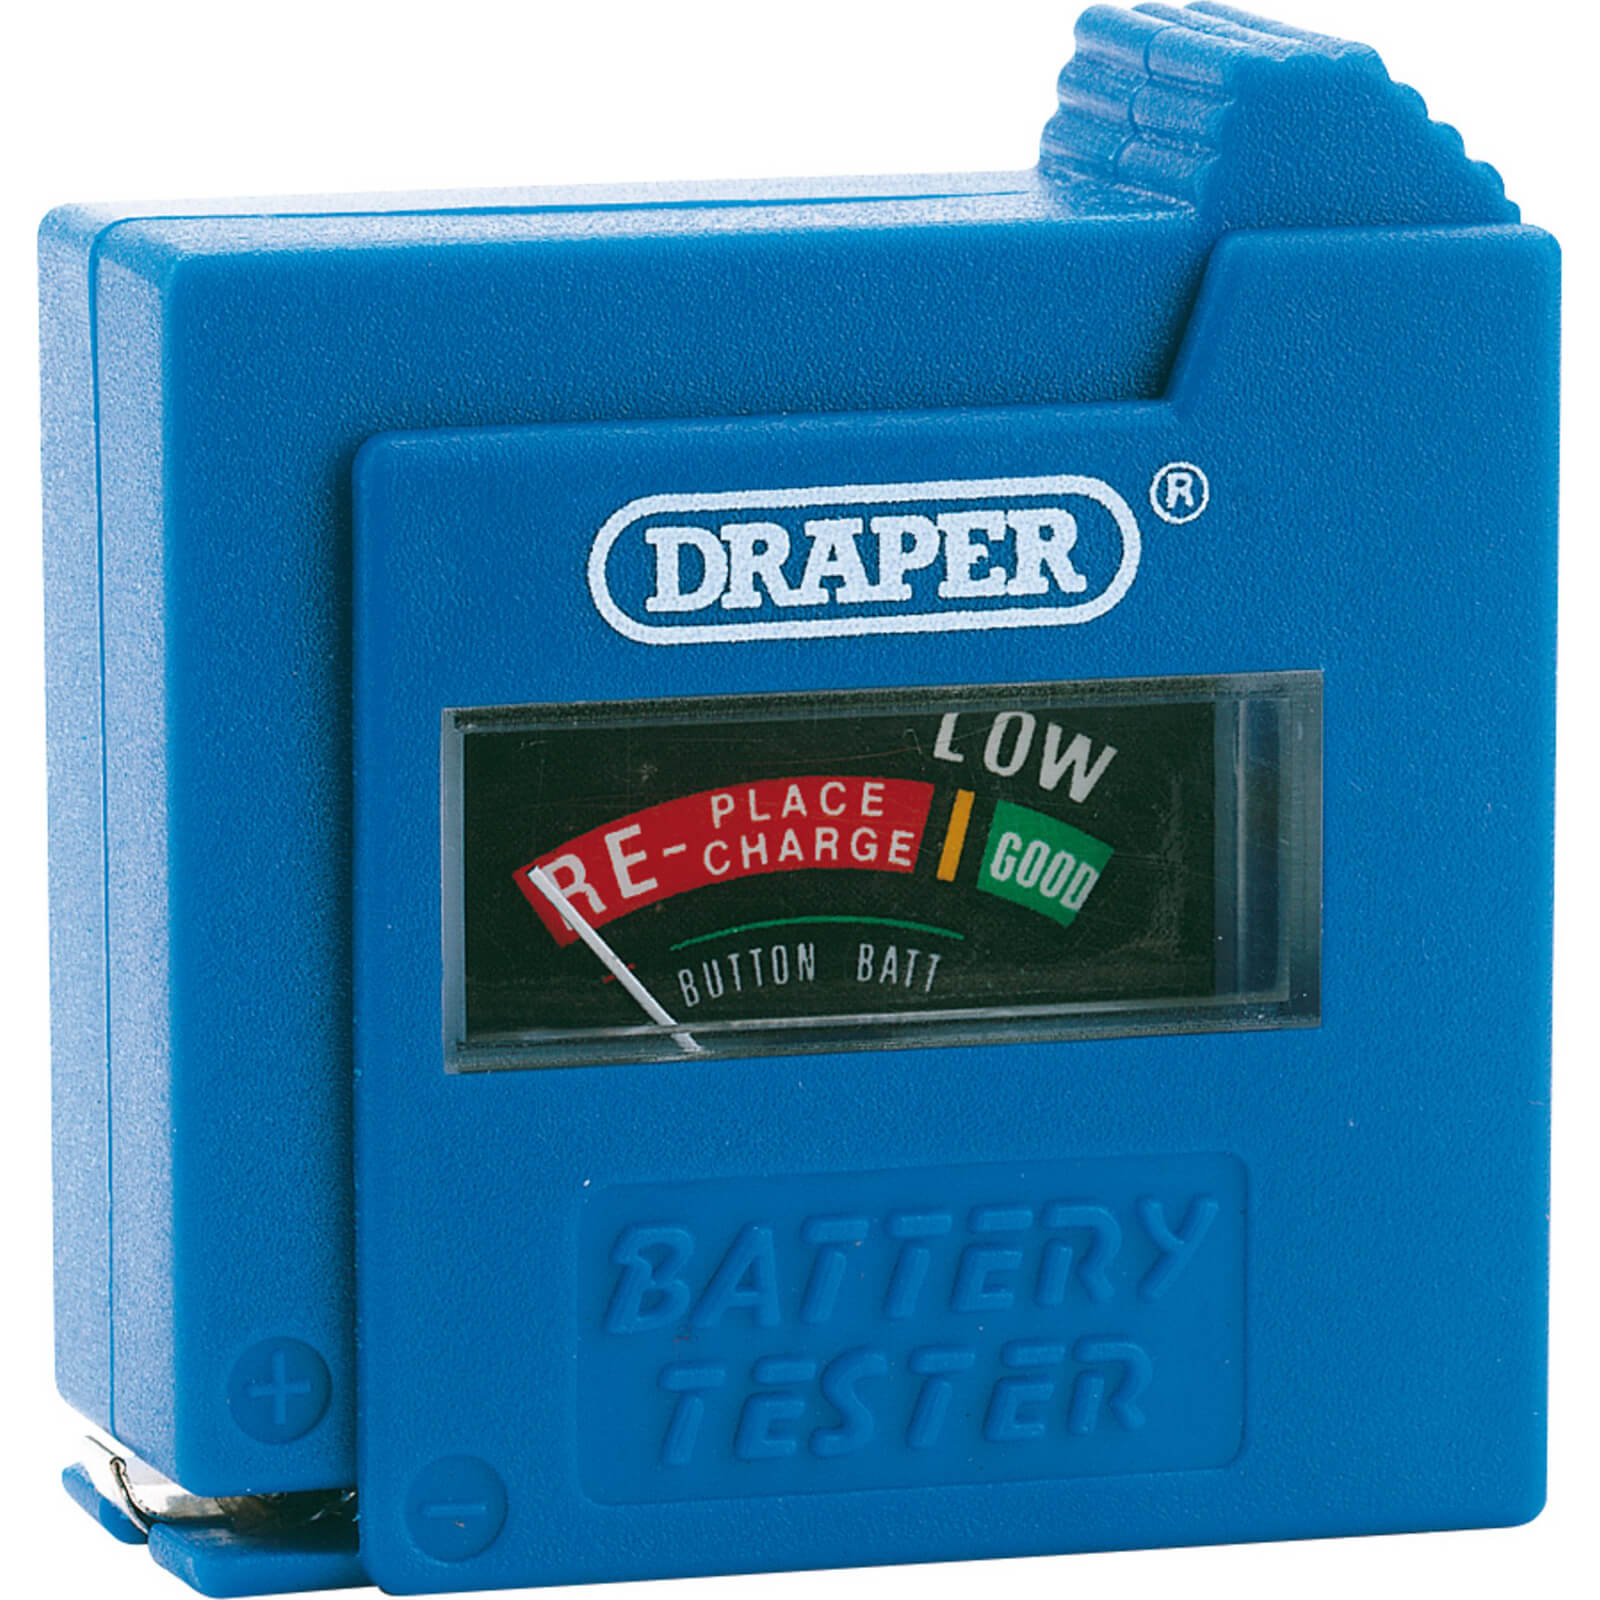 Image of Draper Battery Tester